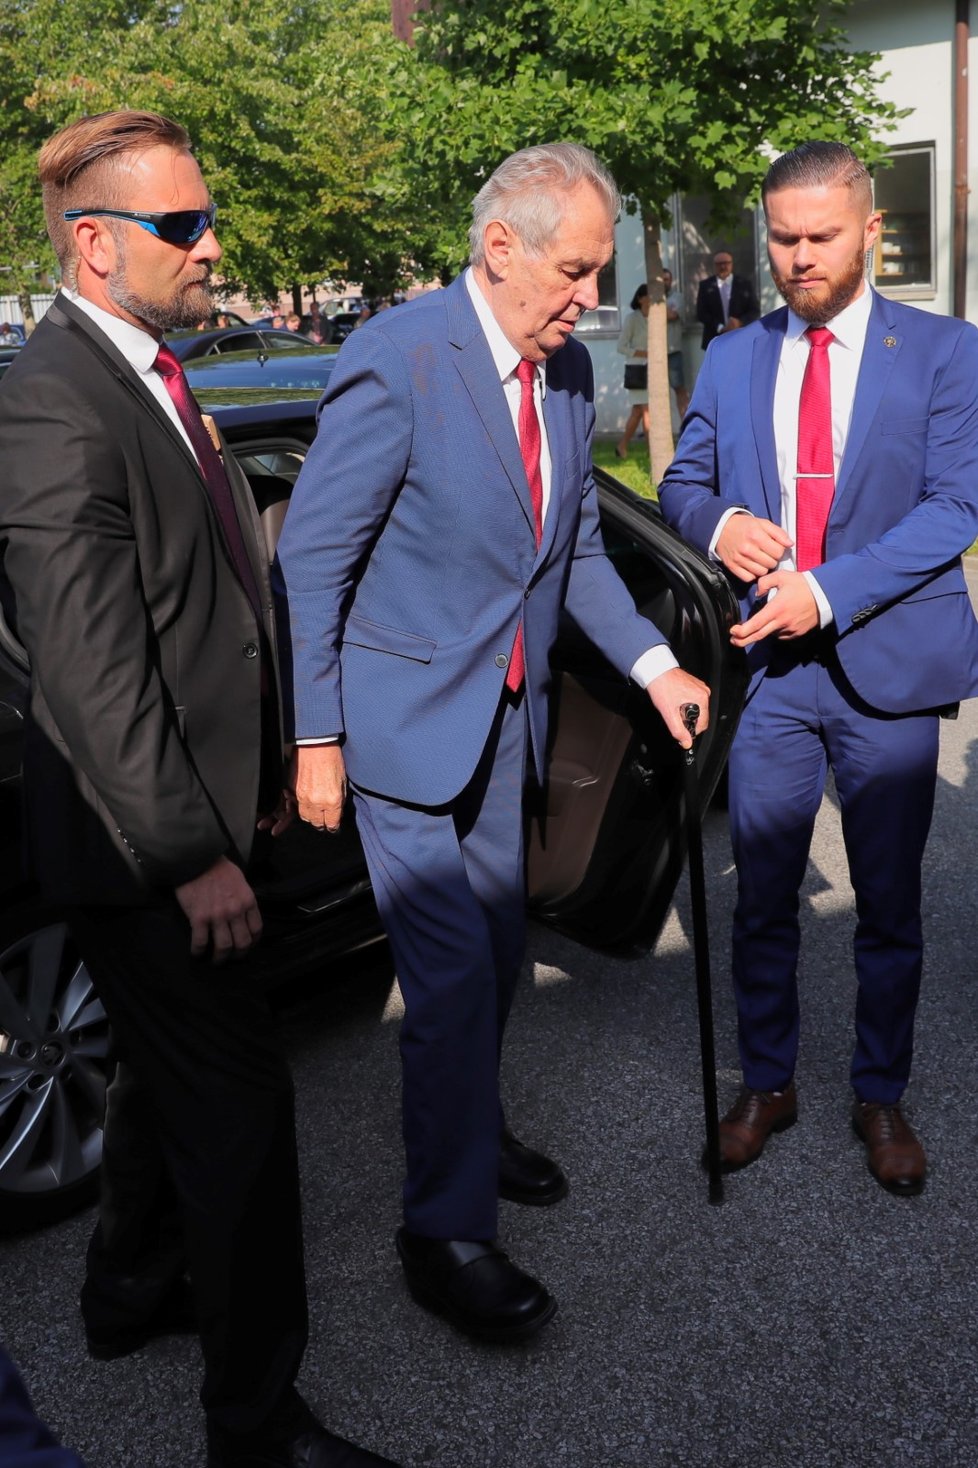 Prezident Miloš Zeman dorazil na Zemi živitelku (22. 08. 2019), aby ji zahájil projevem.